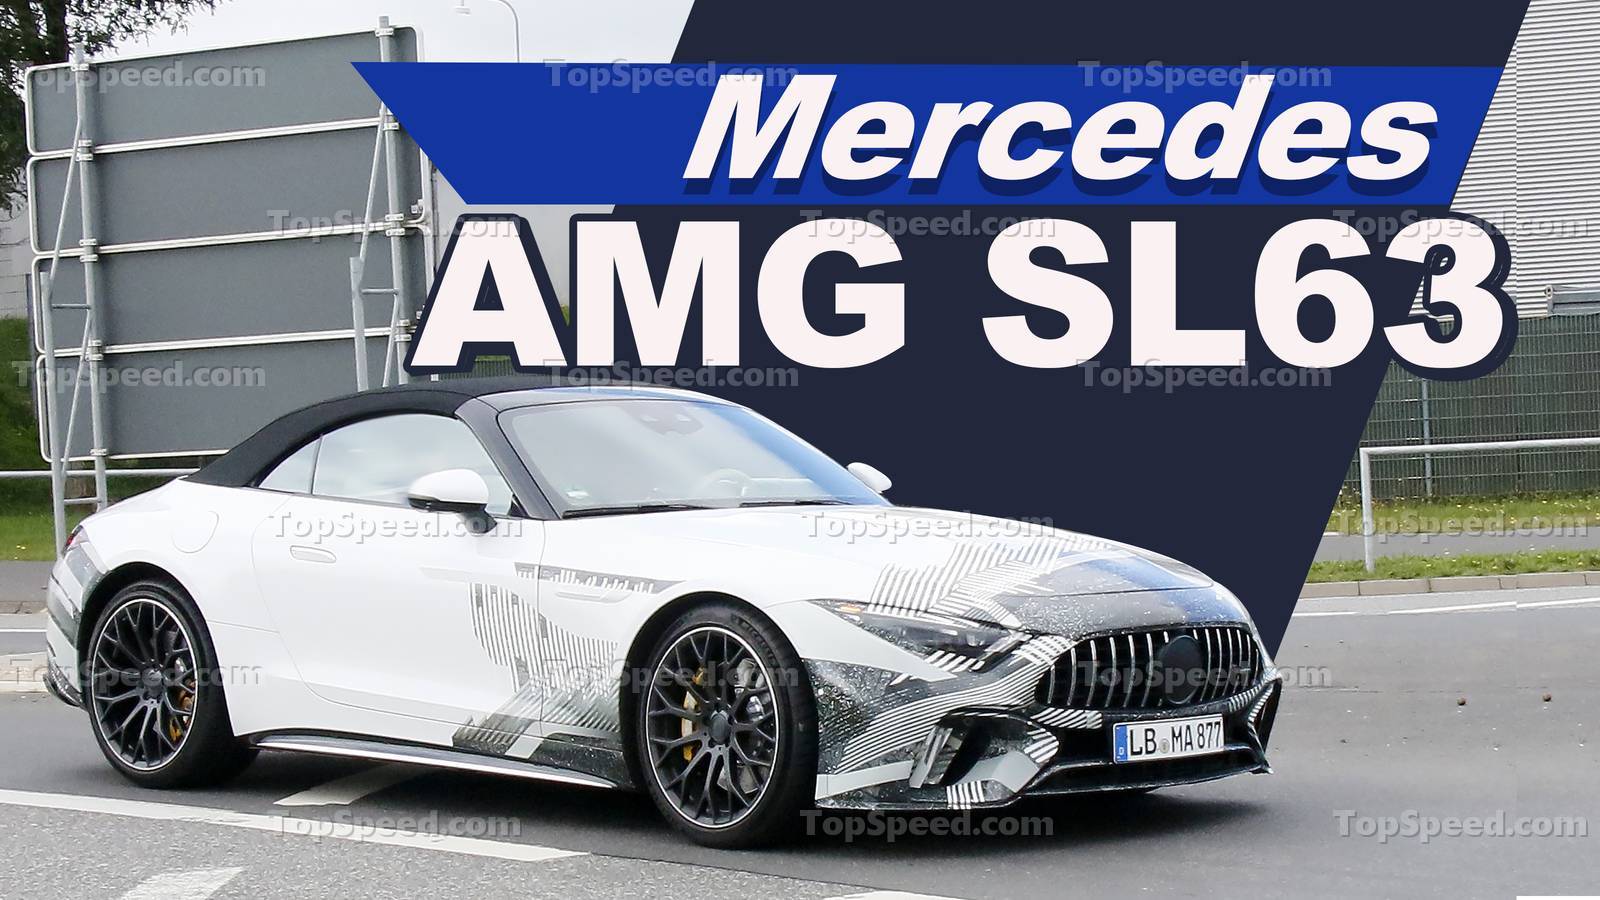 2022 Mercedes AMG SL63